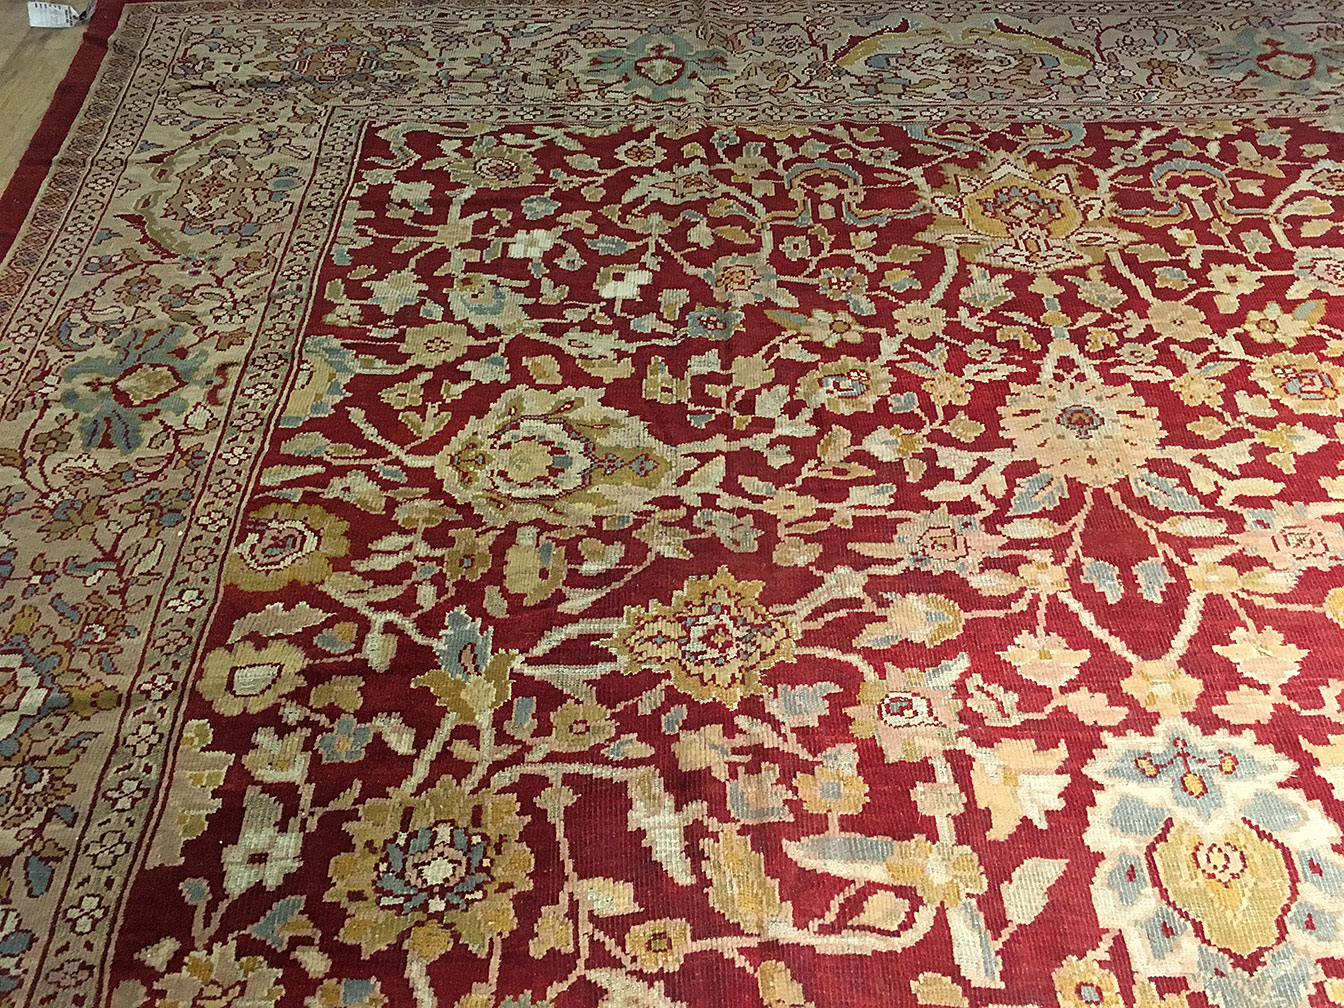 Antique sultan abad Carpet - # 53033